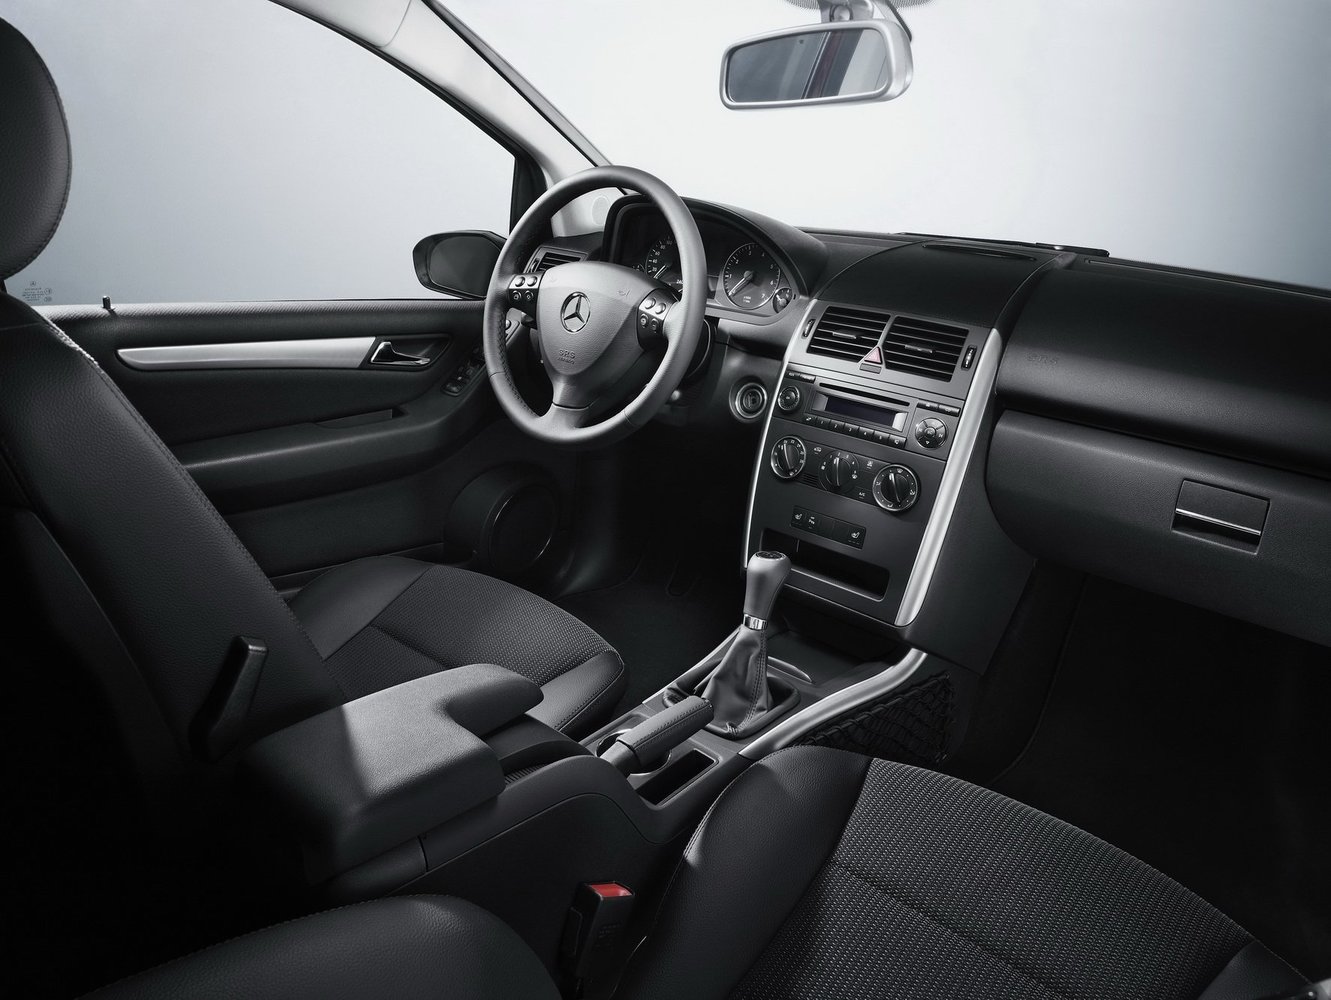 хэтчбек 5 дв. Mercedes-Benz A-klasse 2008 - 2012г выпуска модификация 1.5 CVT (95 л.с.)